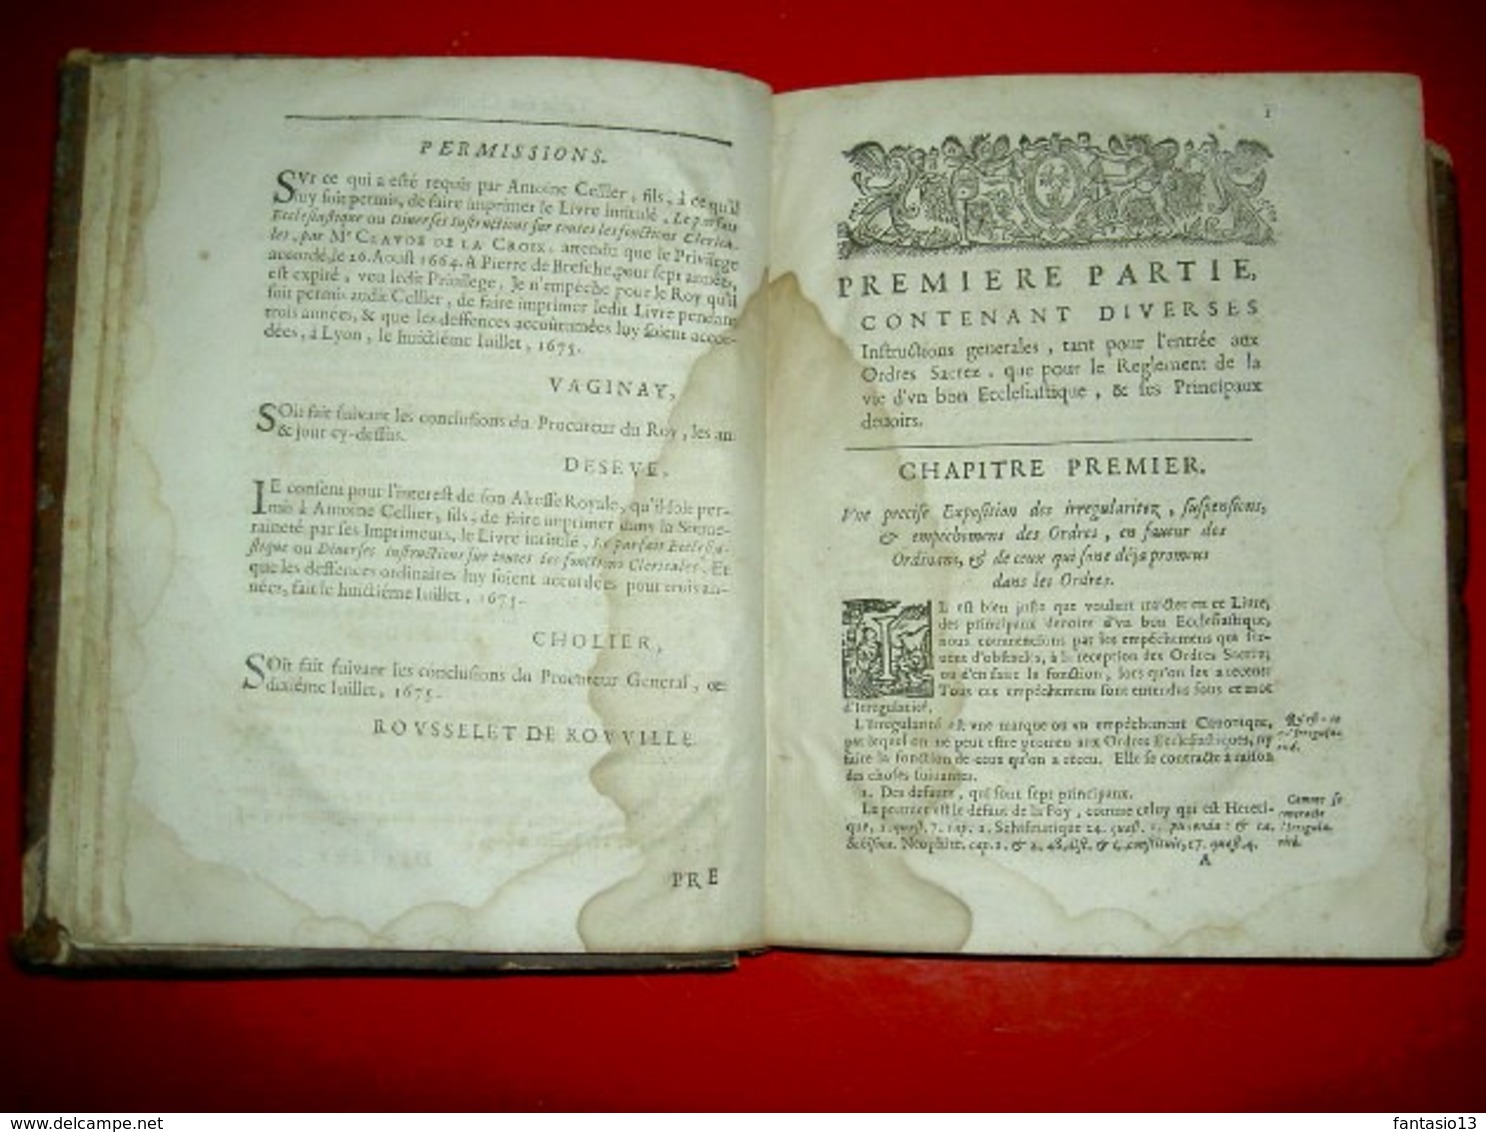 Le parfaict ecclésiastique ou Diverses instructions sur fonctions cléricales A Lyon chez Antoine Cellier MDCLXXVI 1676